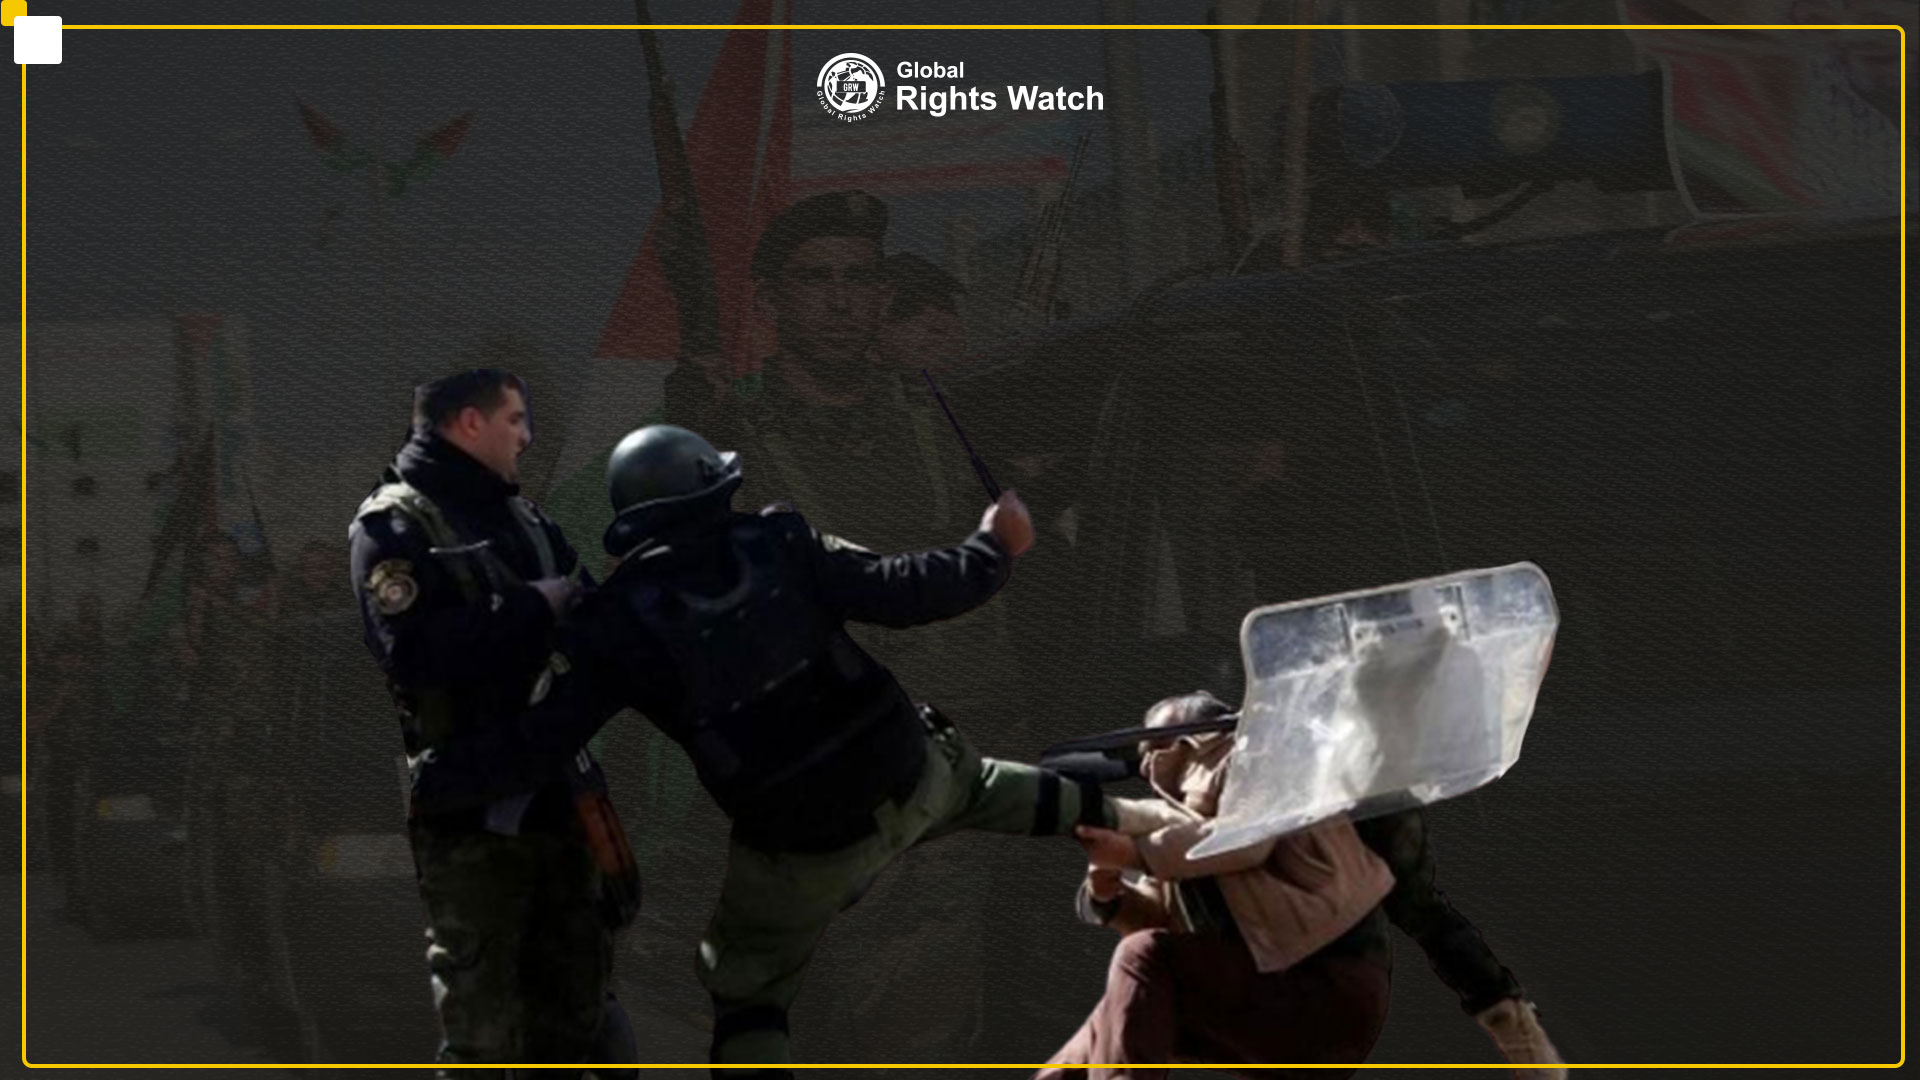 حرس جامعة النجاح الوطنية والأجهزة الأمنية الفلسطينية تعتدي بوحشية على وقفة لطلاب الجامعة وتصيب العديد منهم بجراح بالغة.